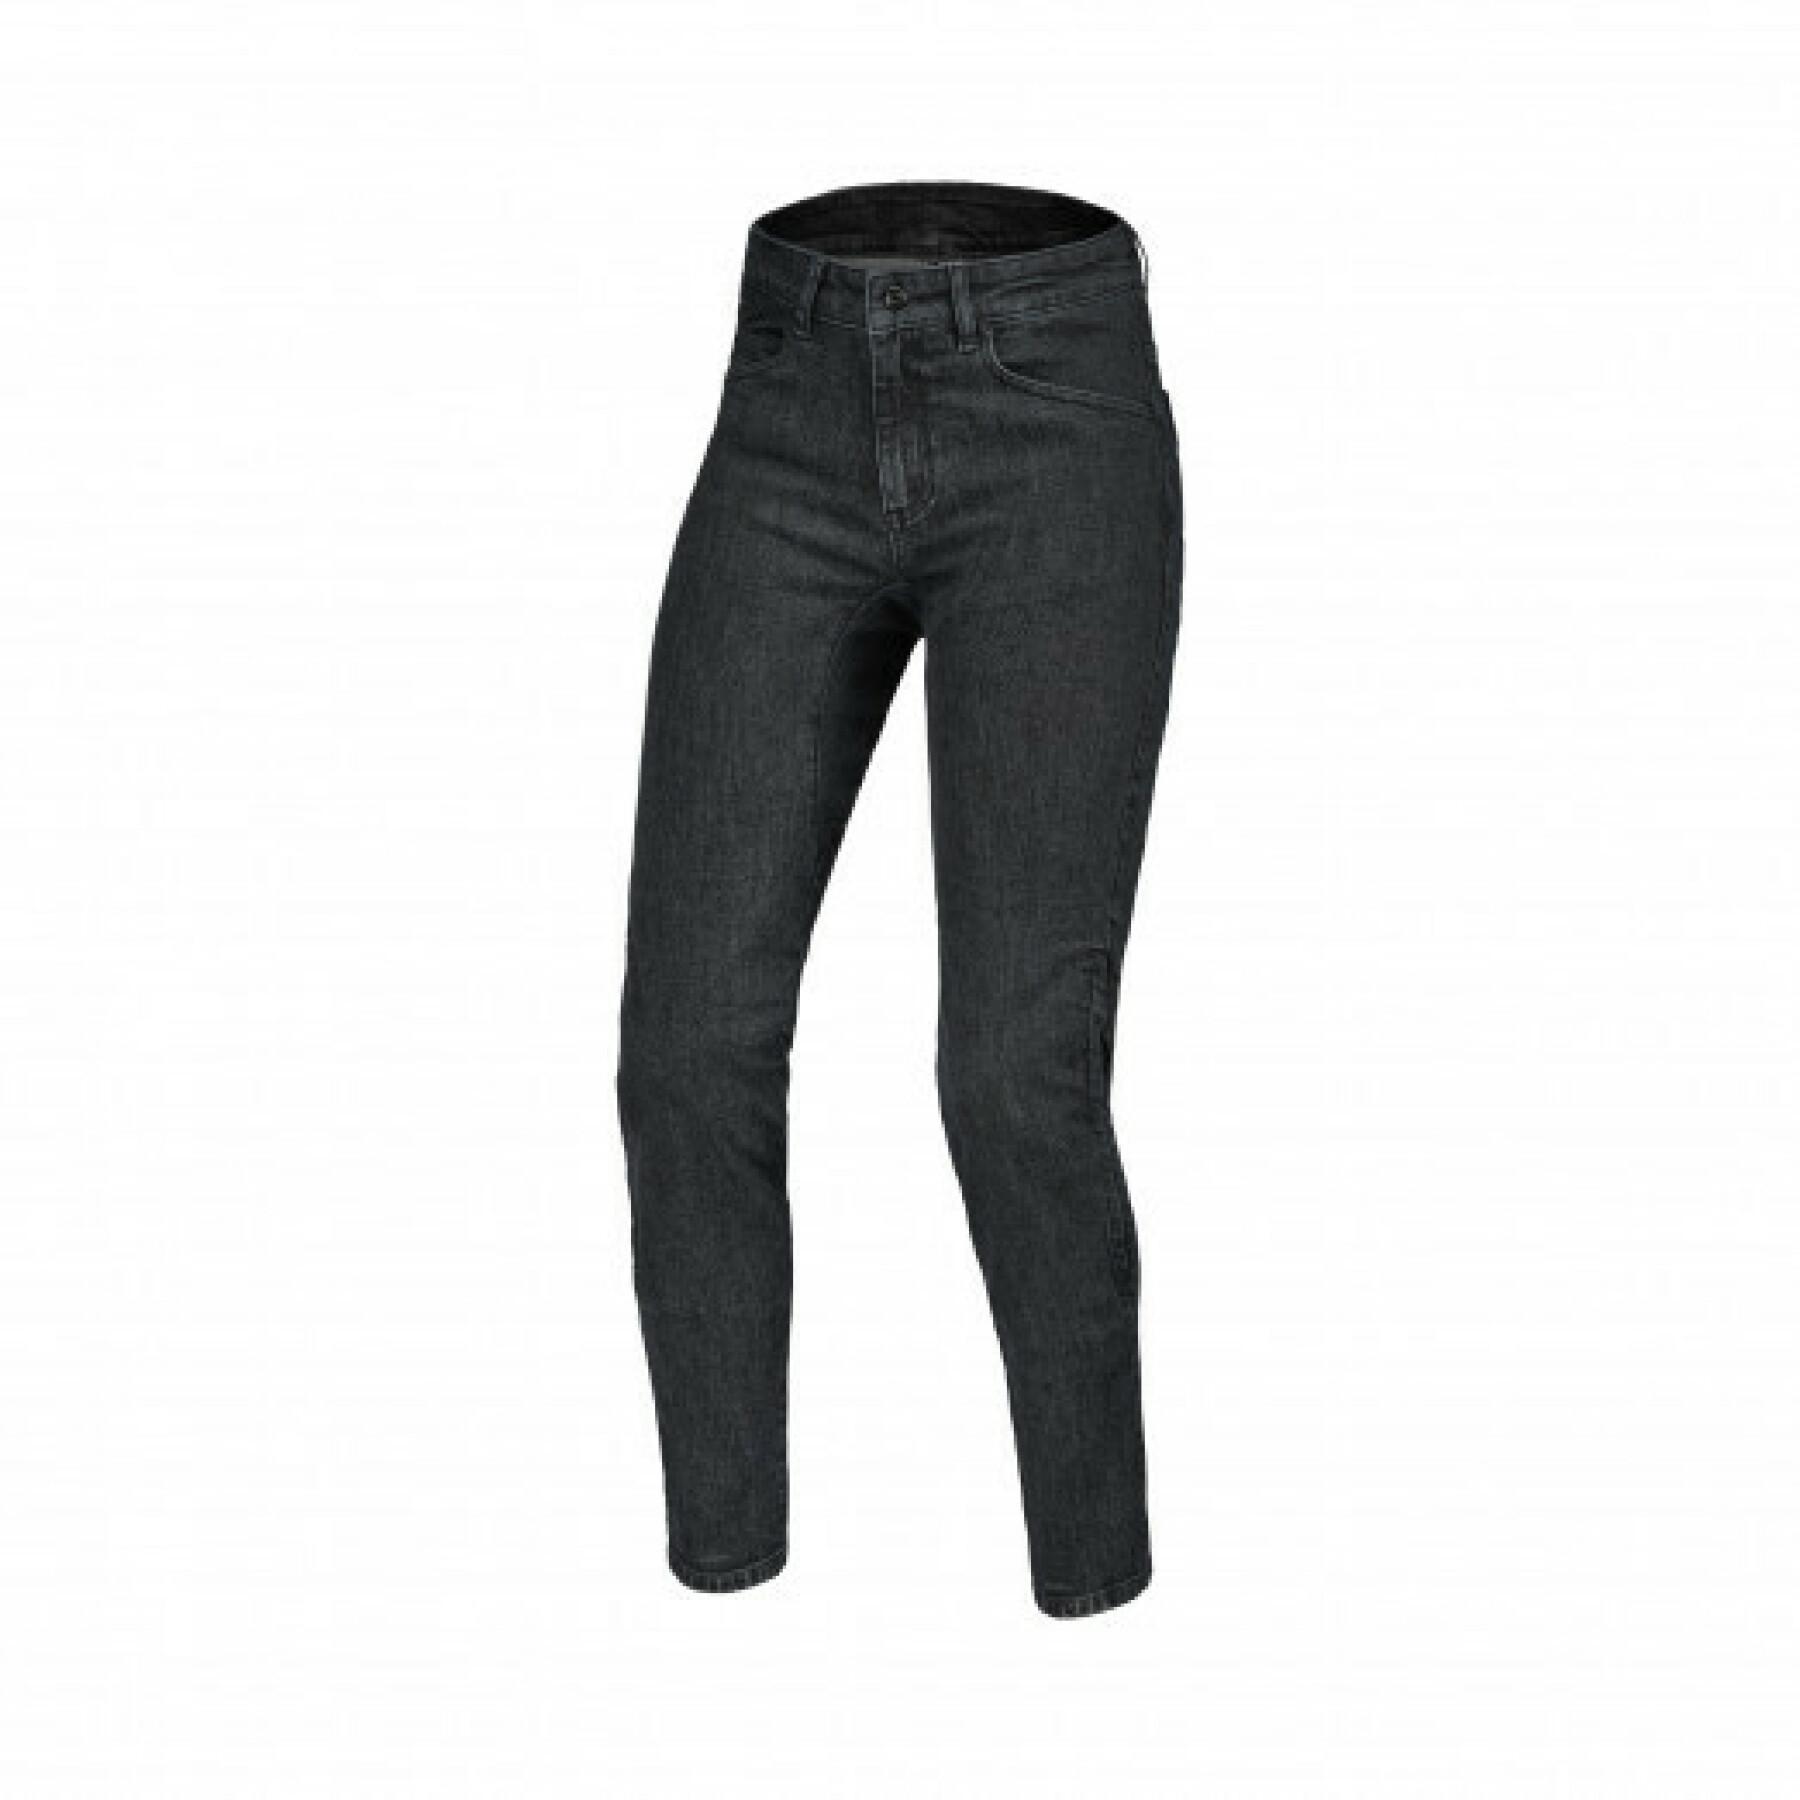 Women's motorcycle jeans Macna janice